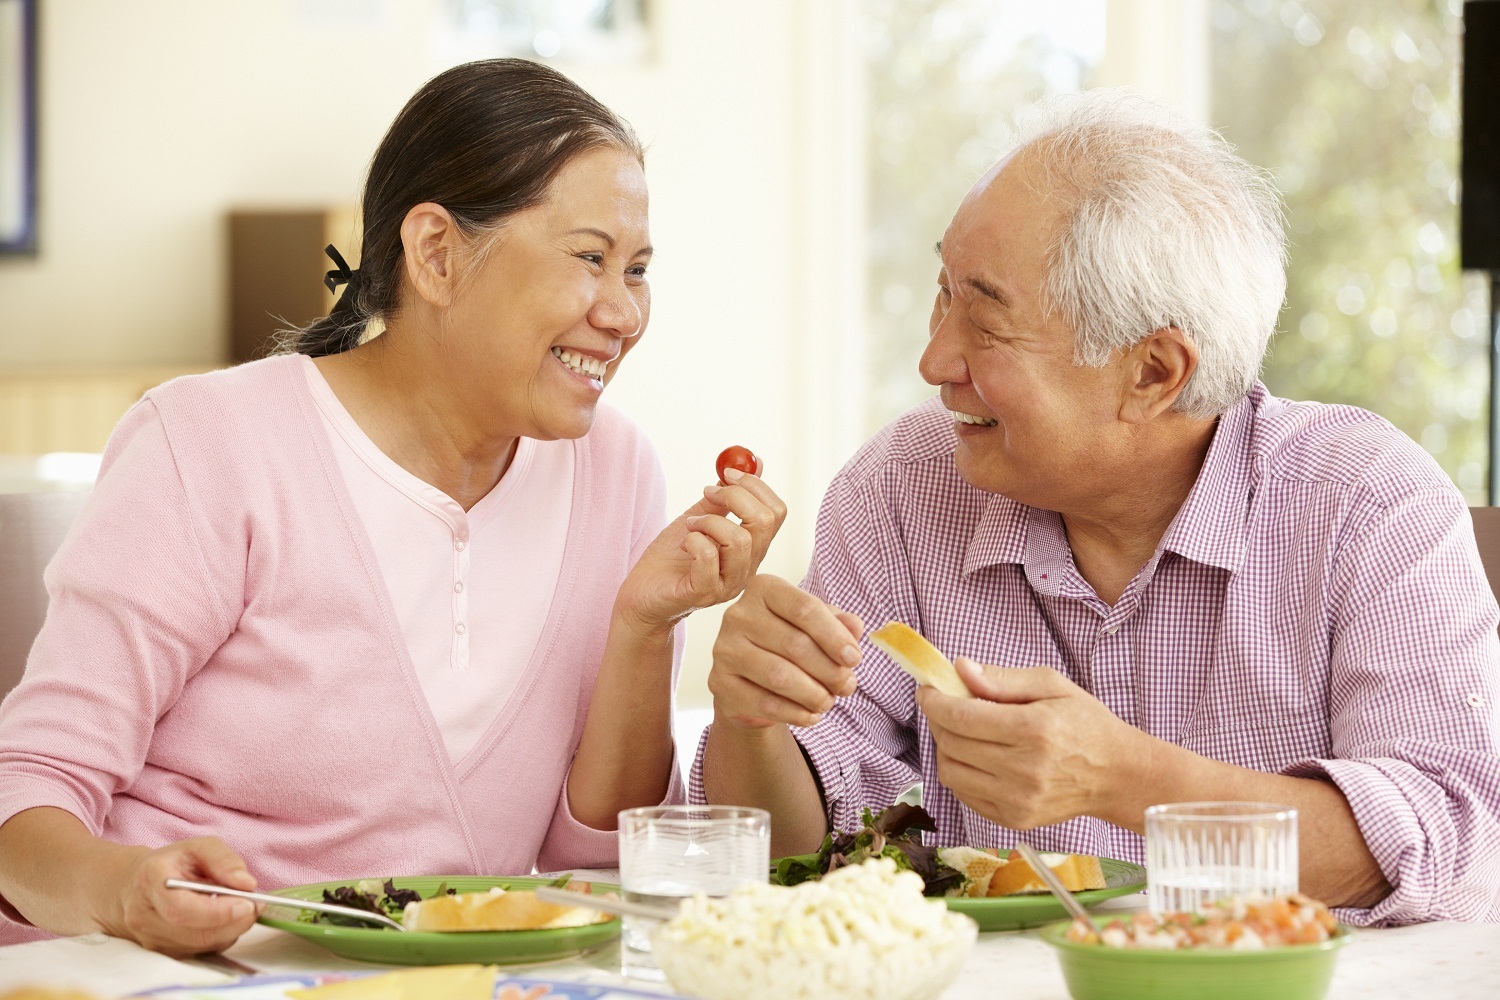 Người già nên ăn nhiều rau củ quả, đời sống tình cảm tâm lý ổn định, tránh những xúc động hay chấn thương quá mức để phòng ngừa cơn đột quỵ